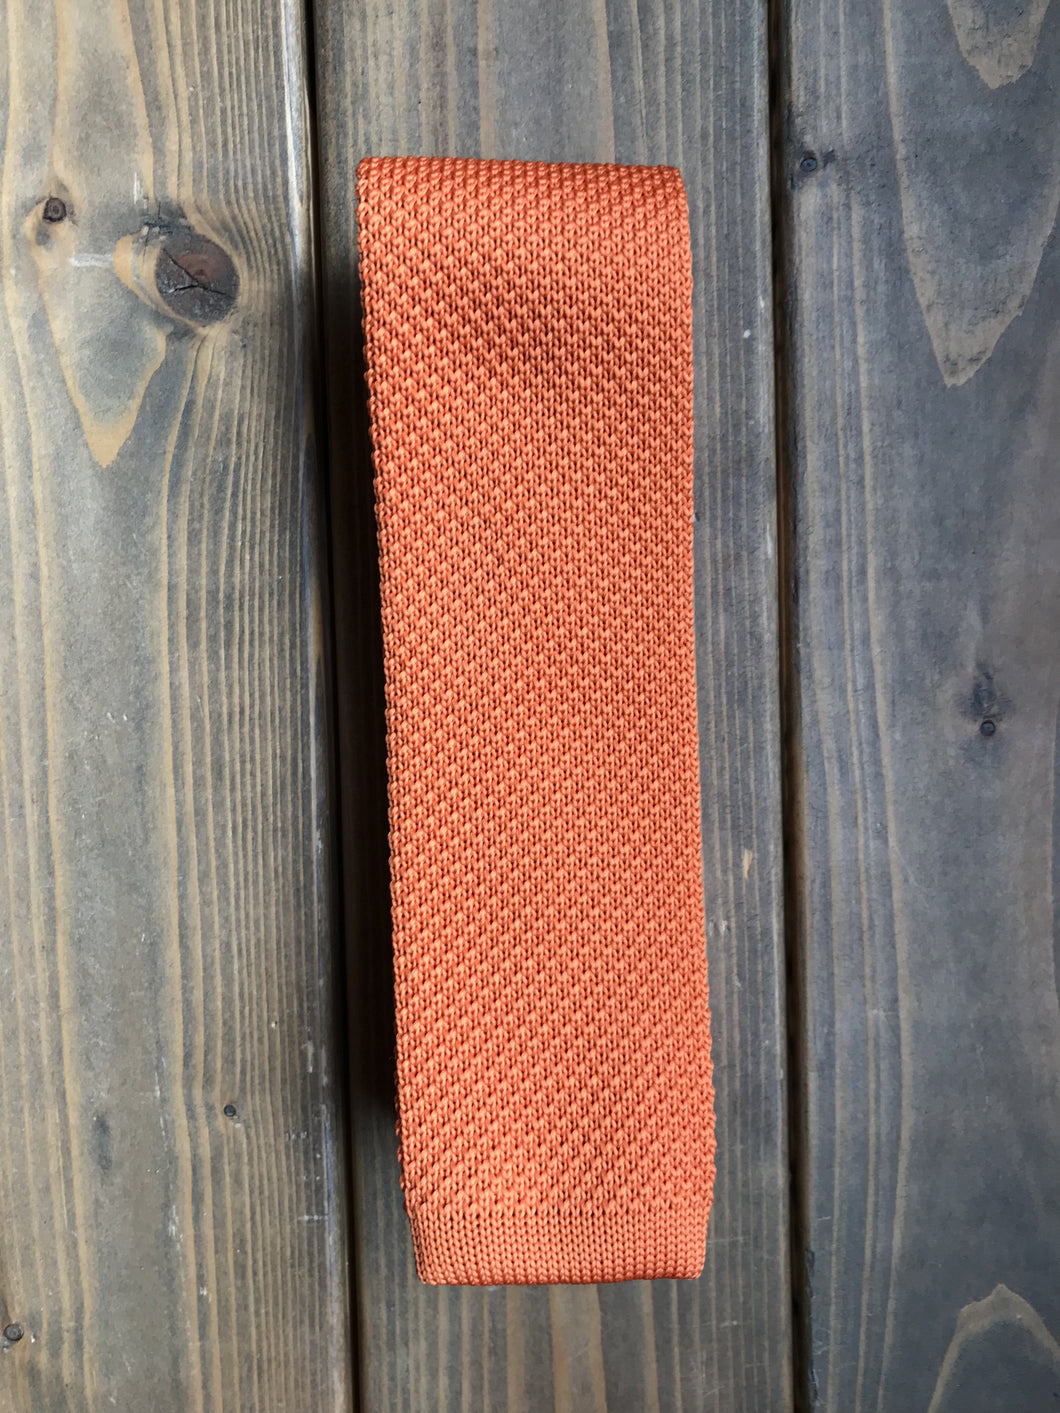 Orange Knitted Tie